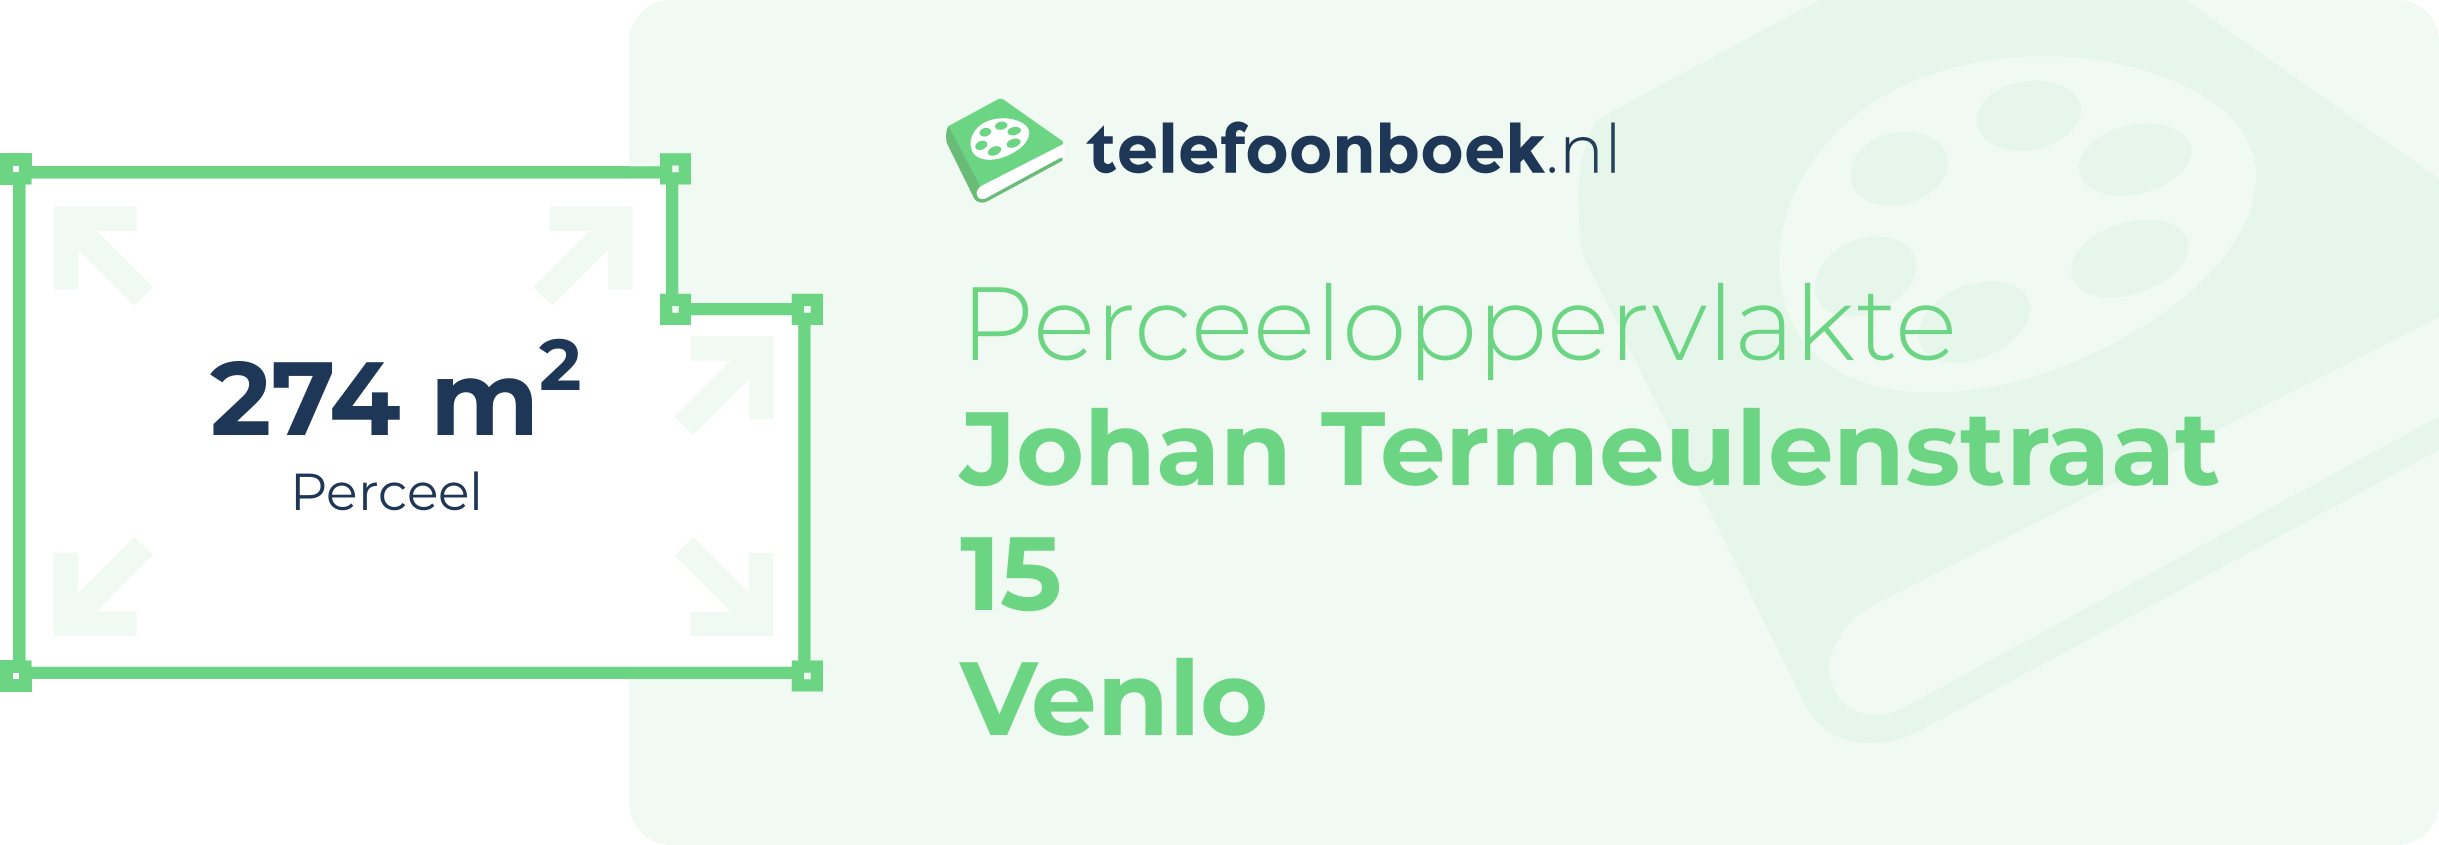 Perceeloppervlakte Johan Termeulenstraat 15 Venlo